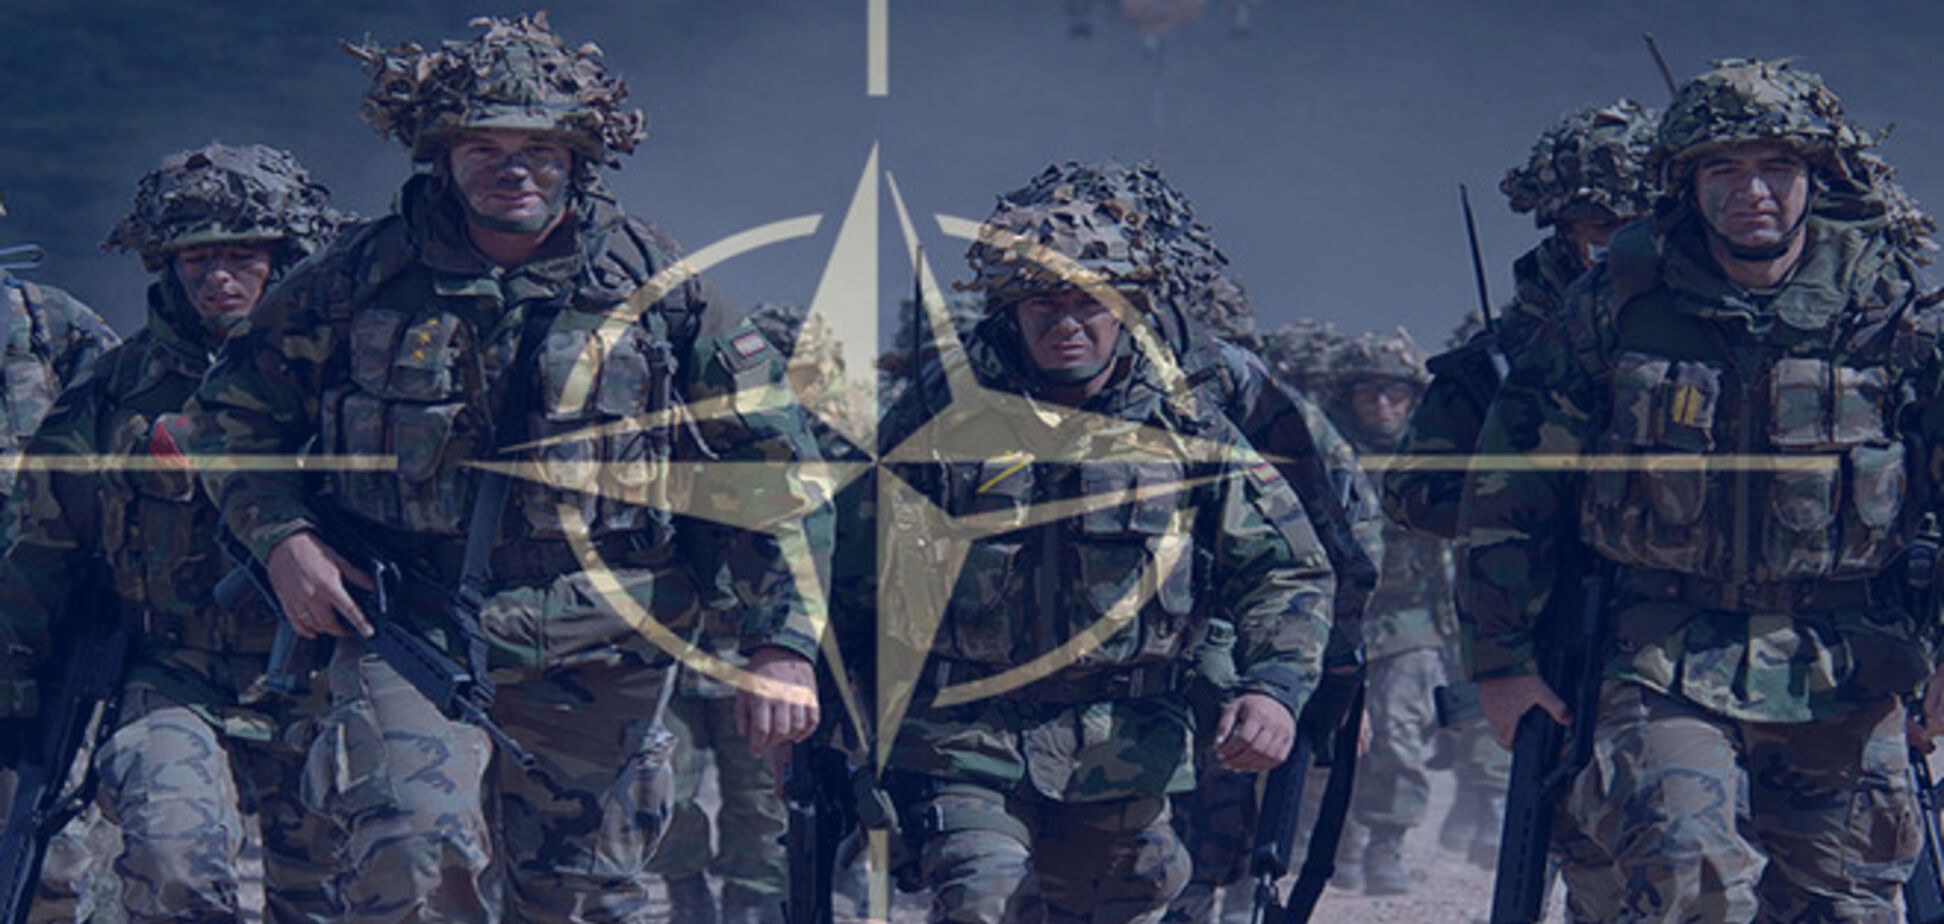 НЕвхождение в НАТО опасно для жизни. Доказано Россией